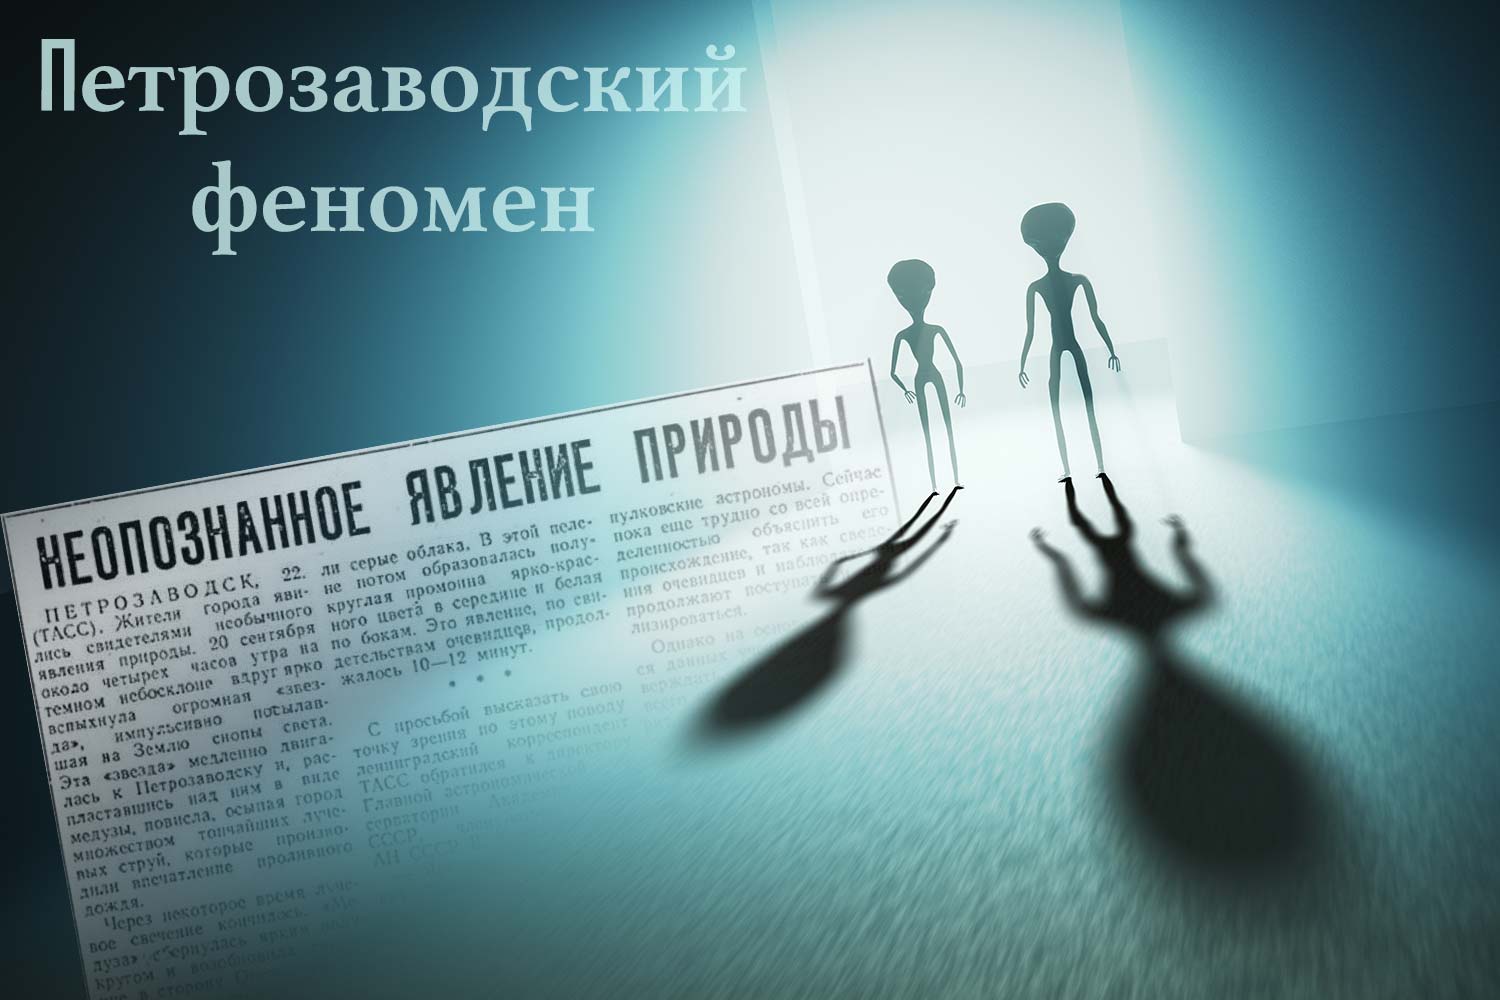 Вырезка из газеты о петрозаводском феномене на фоне пришельцев